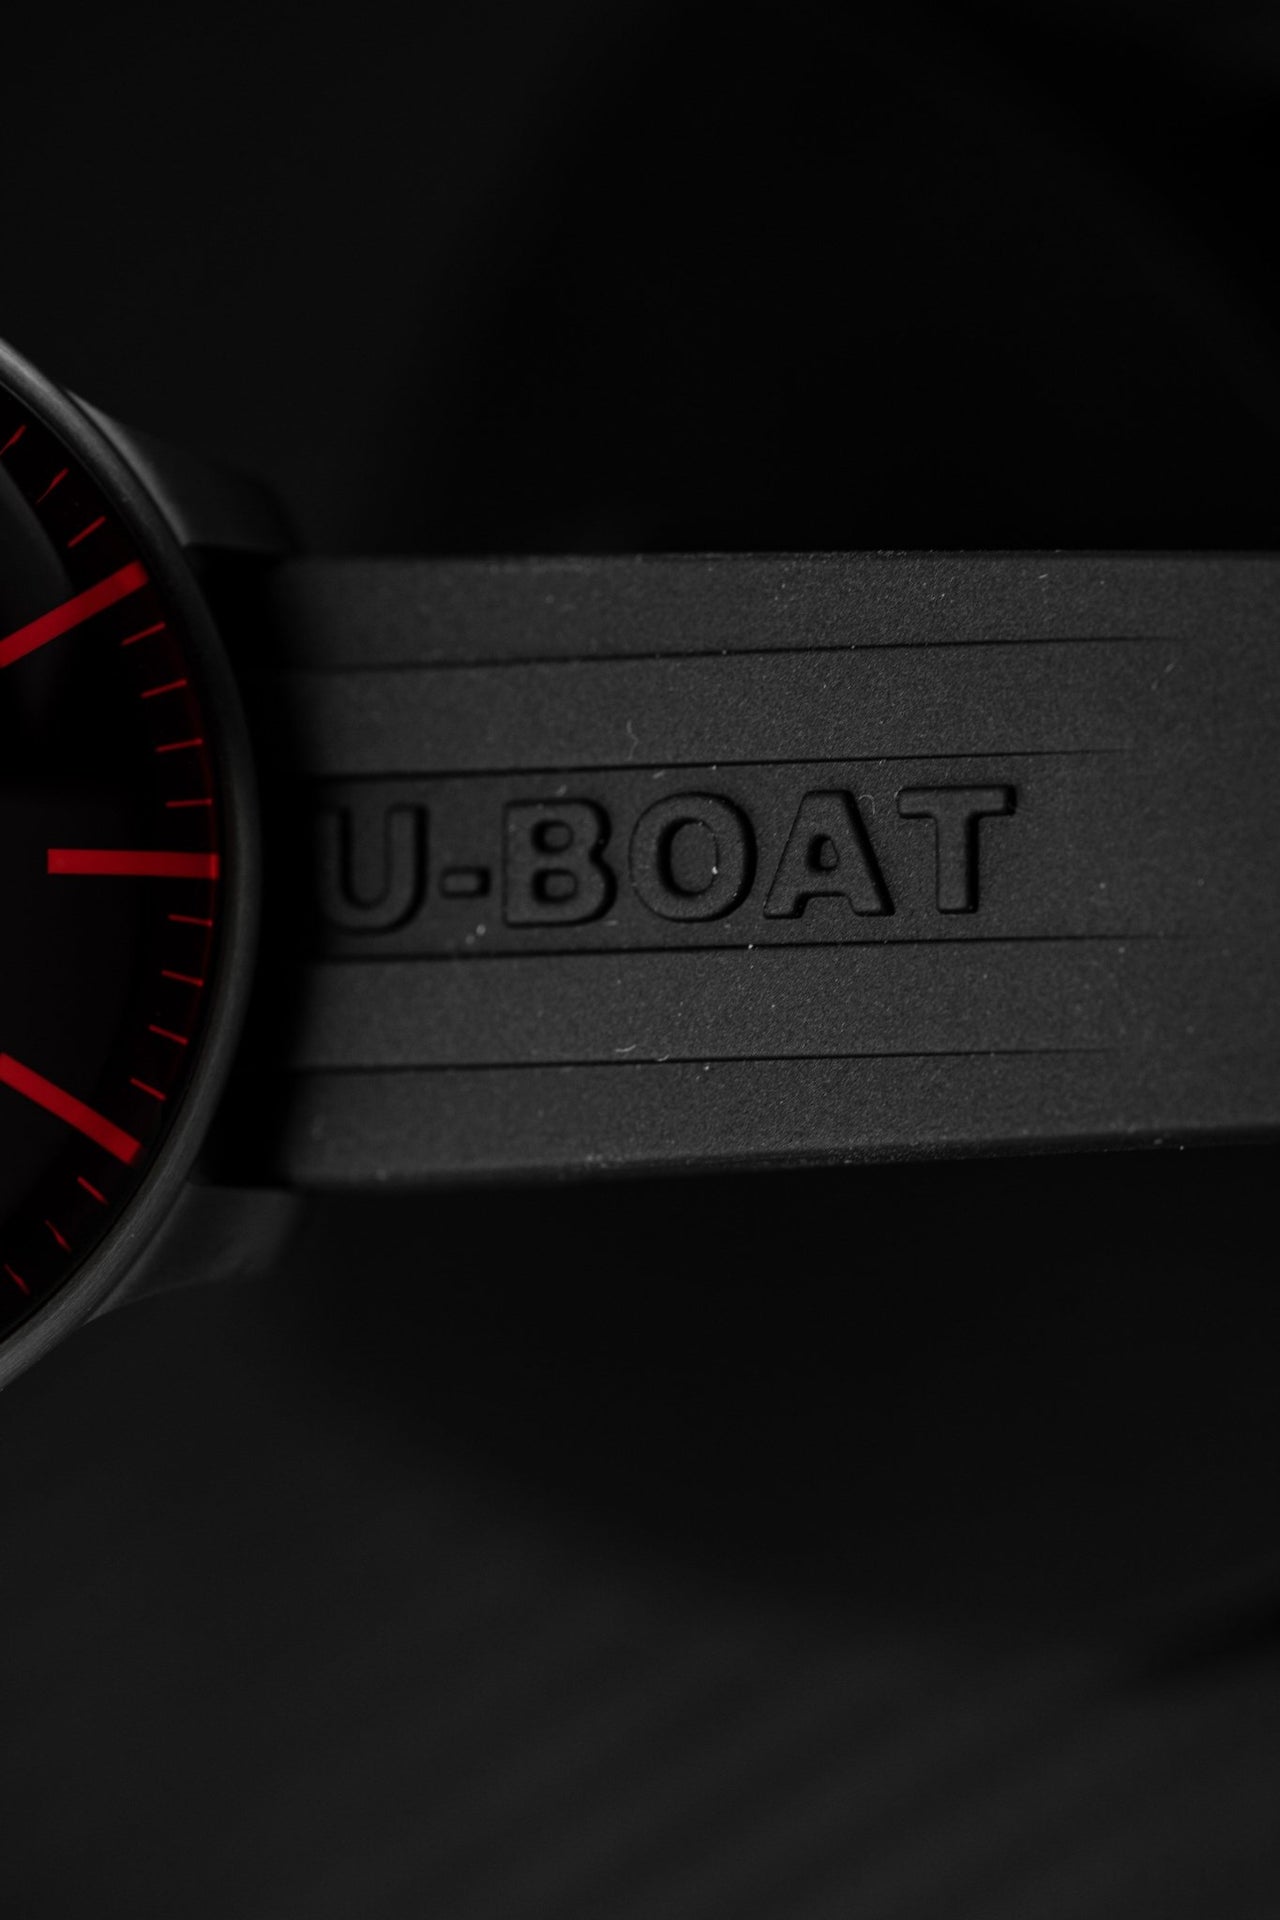 U-Boat Darkmoon 44 Red Steel - Watches & Crystals